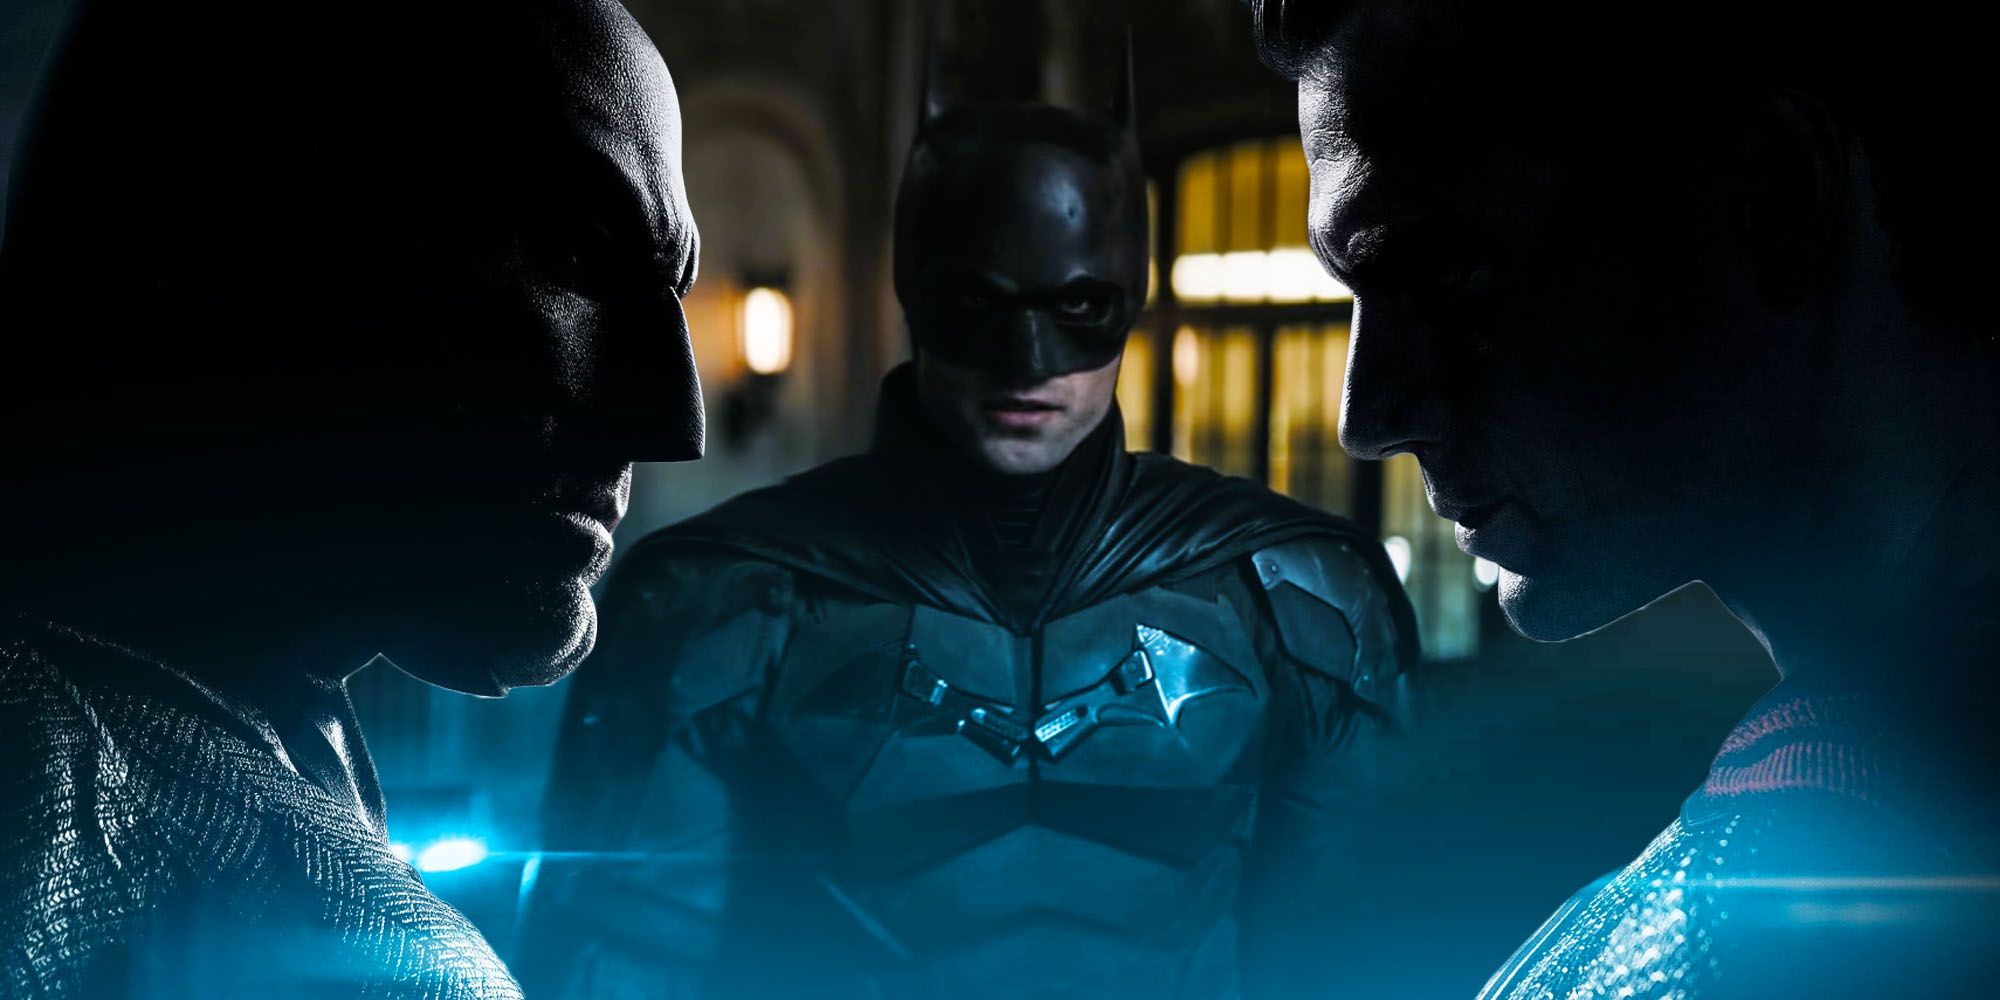 The batman will avoid batman v superman box office failure